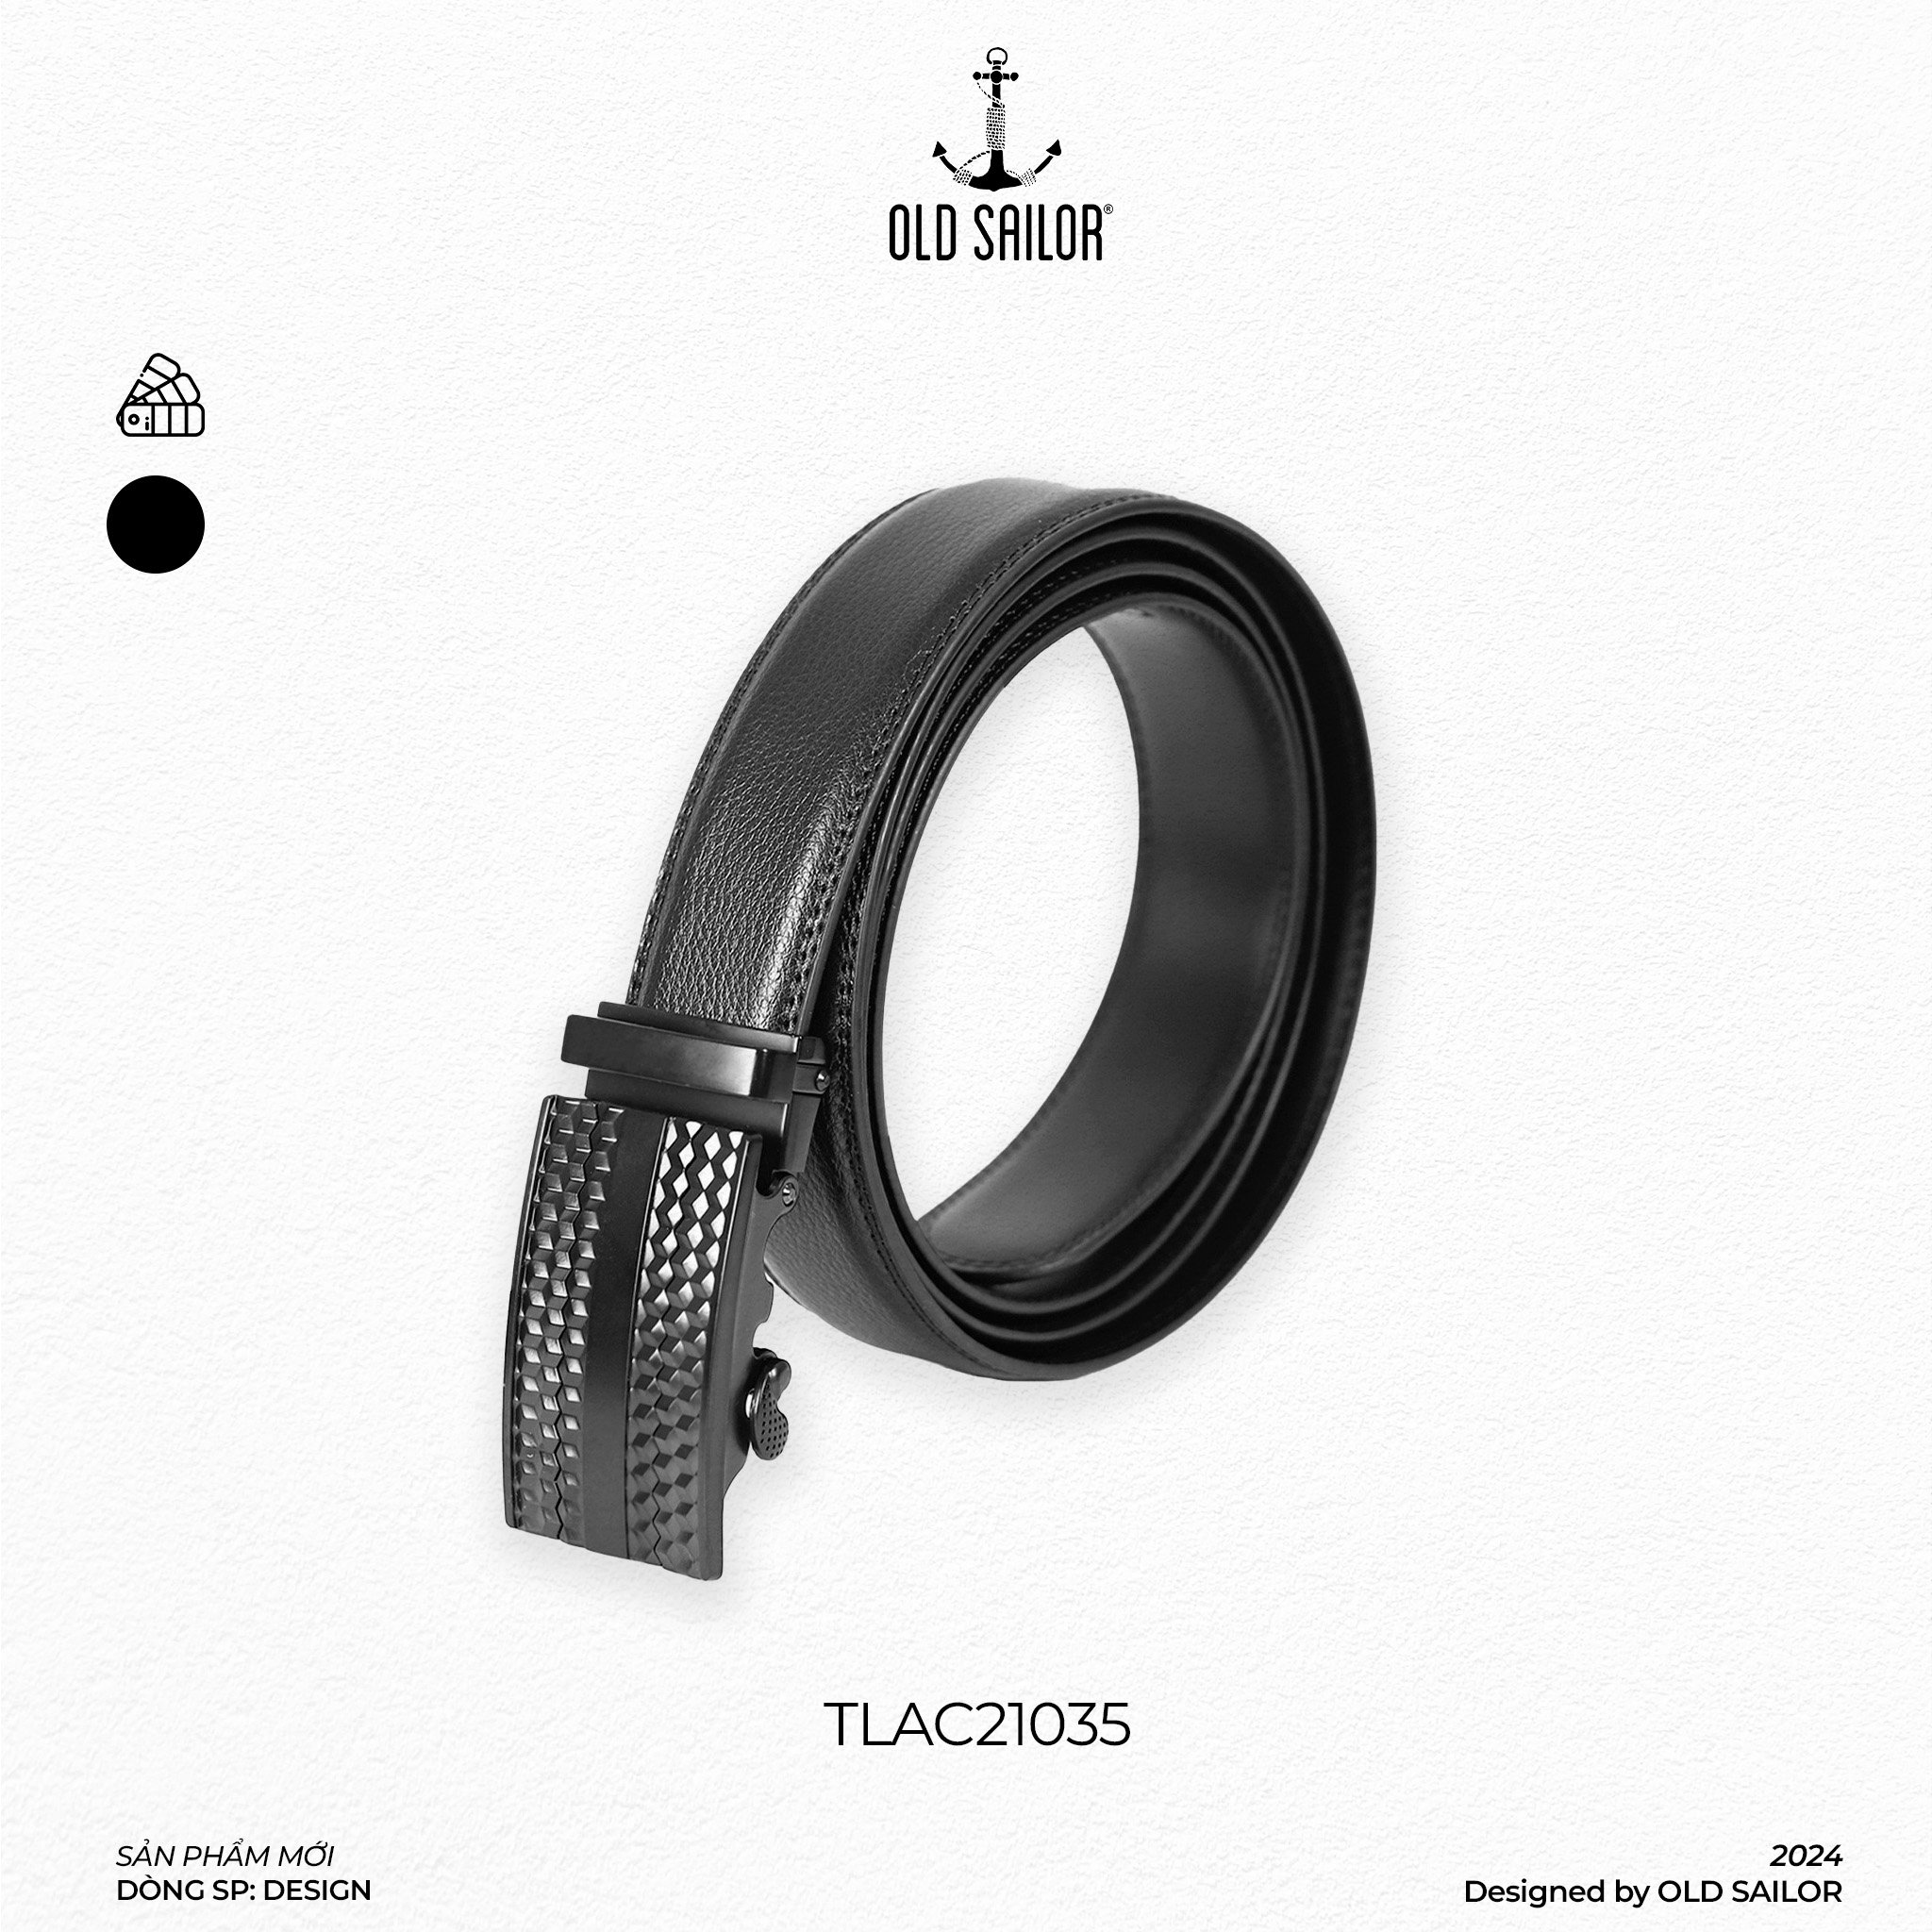 Thắt lưng office belt Old Sailor - TLAC21035 - 1m6 - black